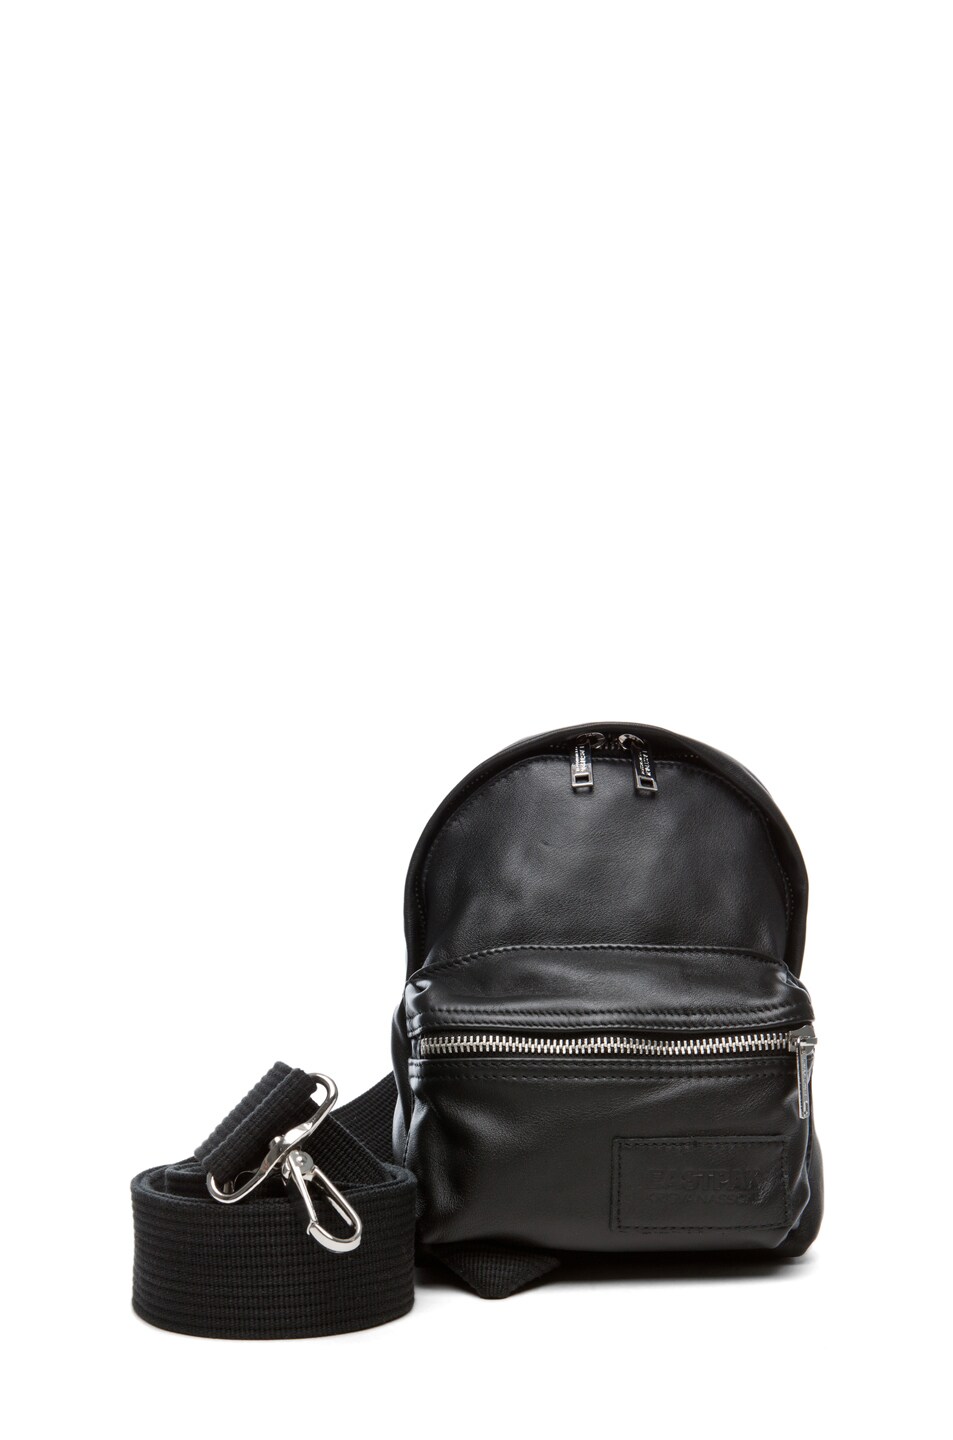 Image 1 of Kris Van Assche x Eastpack Camera Bag in Black Leather